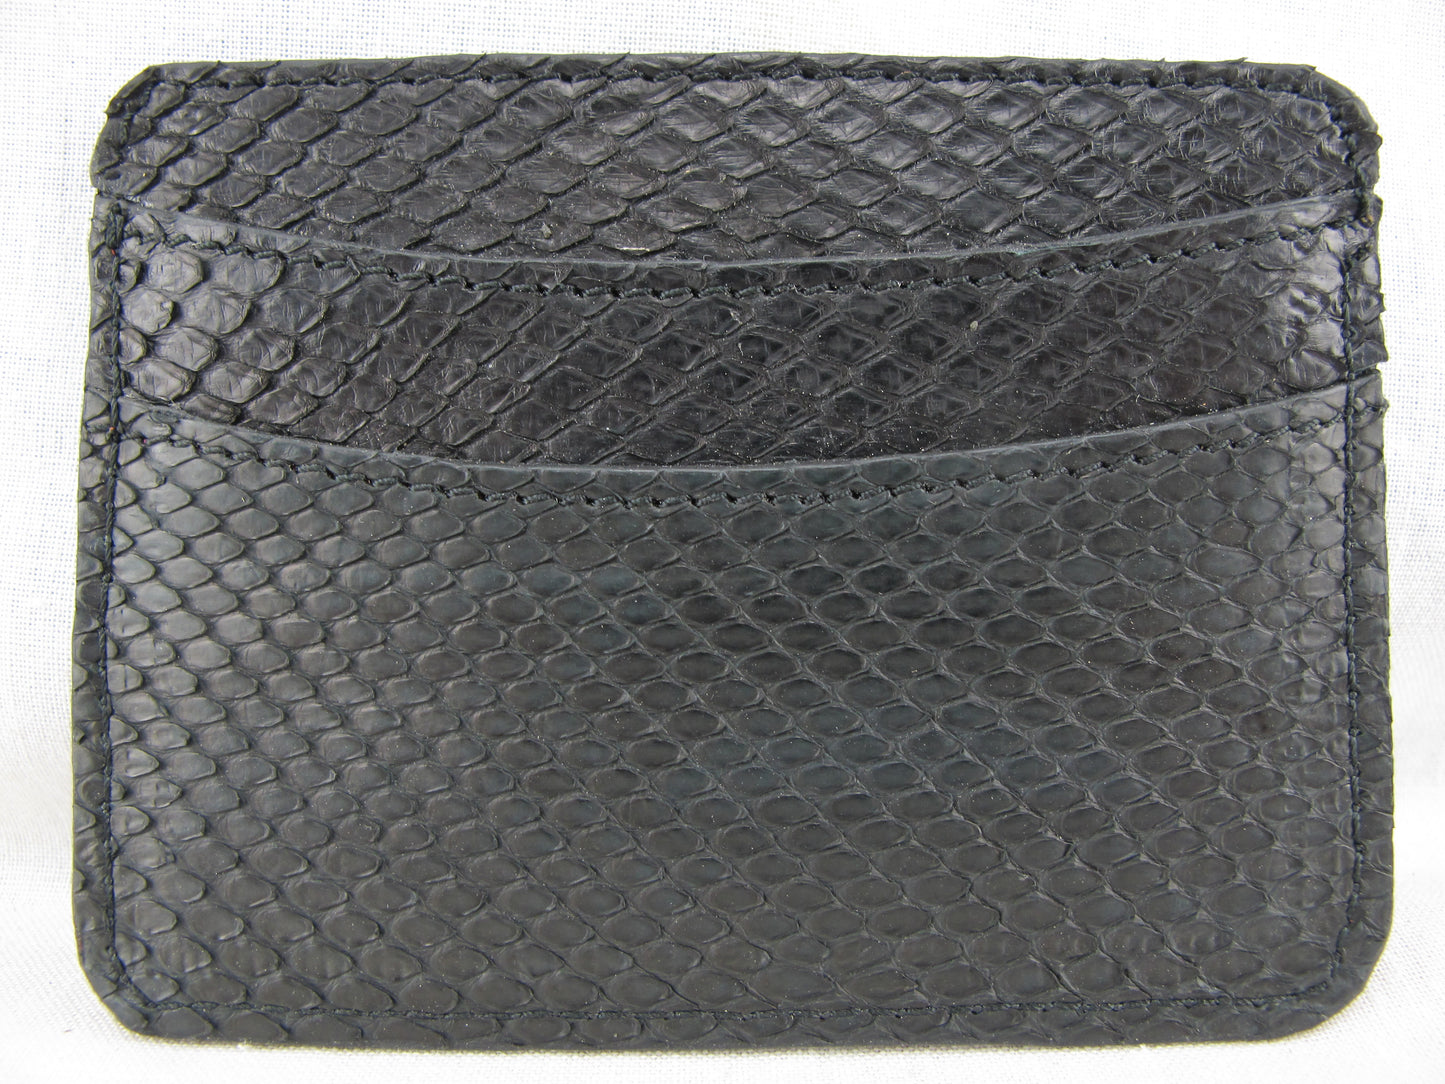 Genuine Python Skin Leather Slim Business & Credit Card Holder Wallet